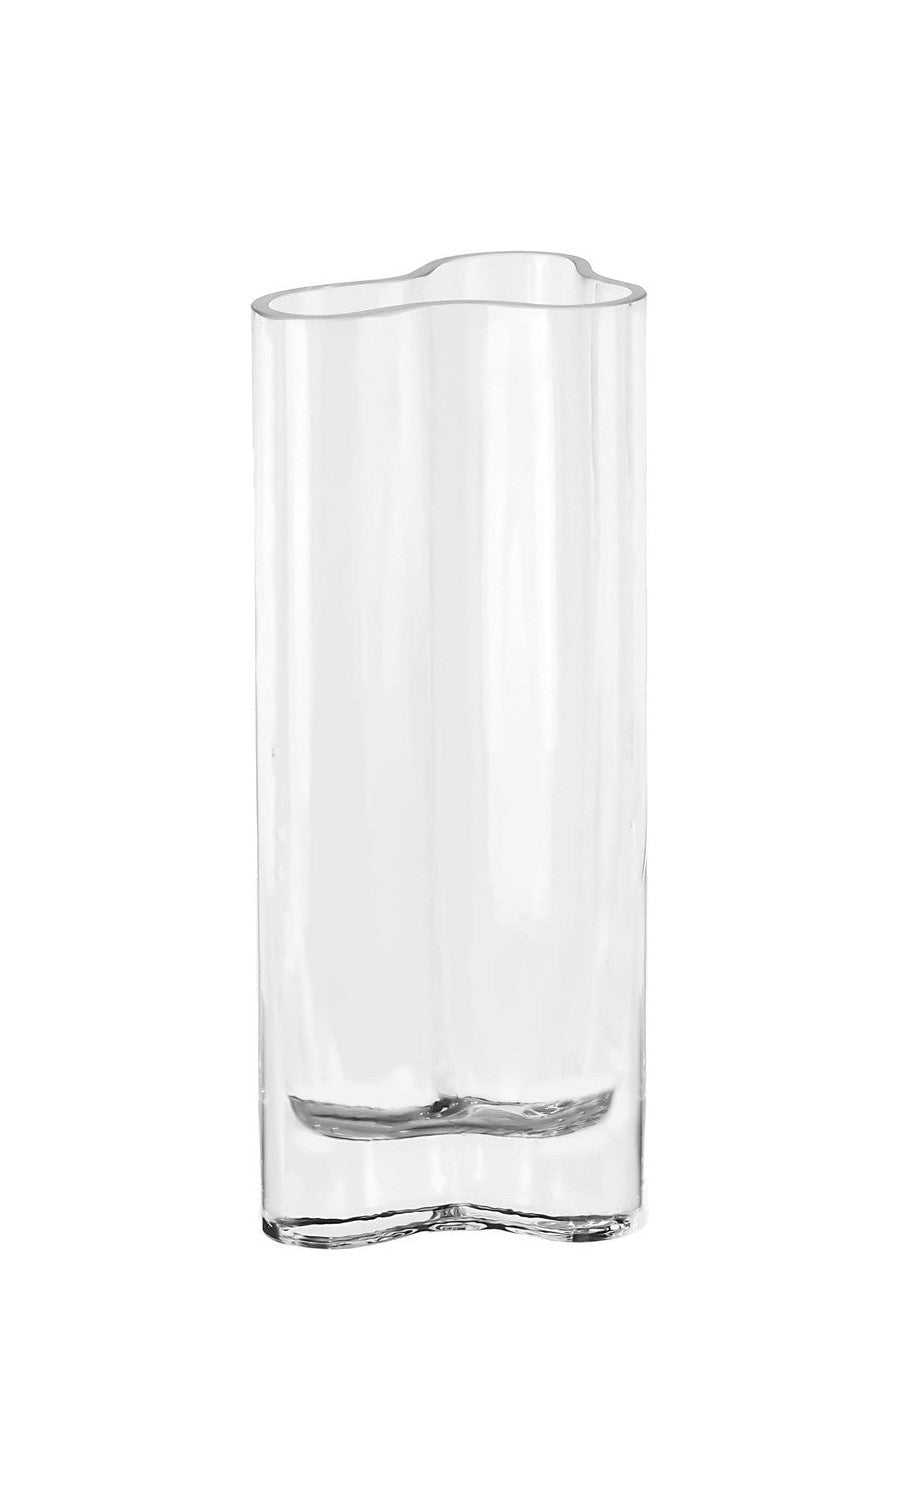 Vase de vidrio moderno delgado inspirado en Aalto, Coral26cl